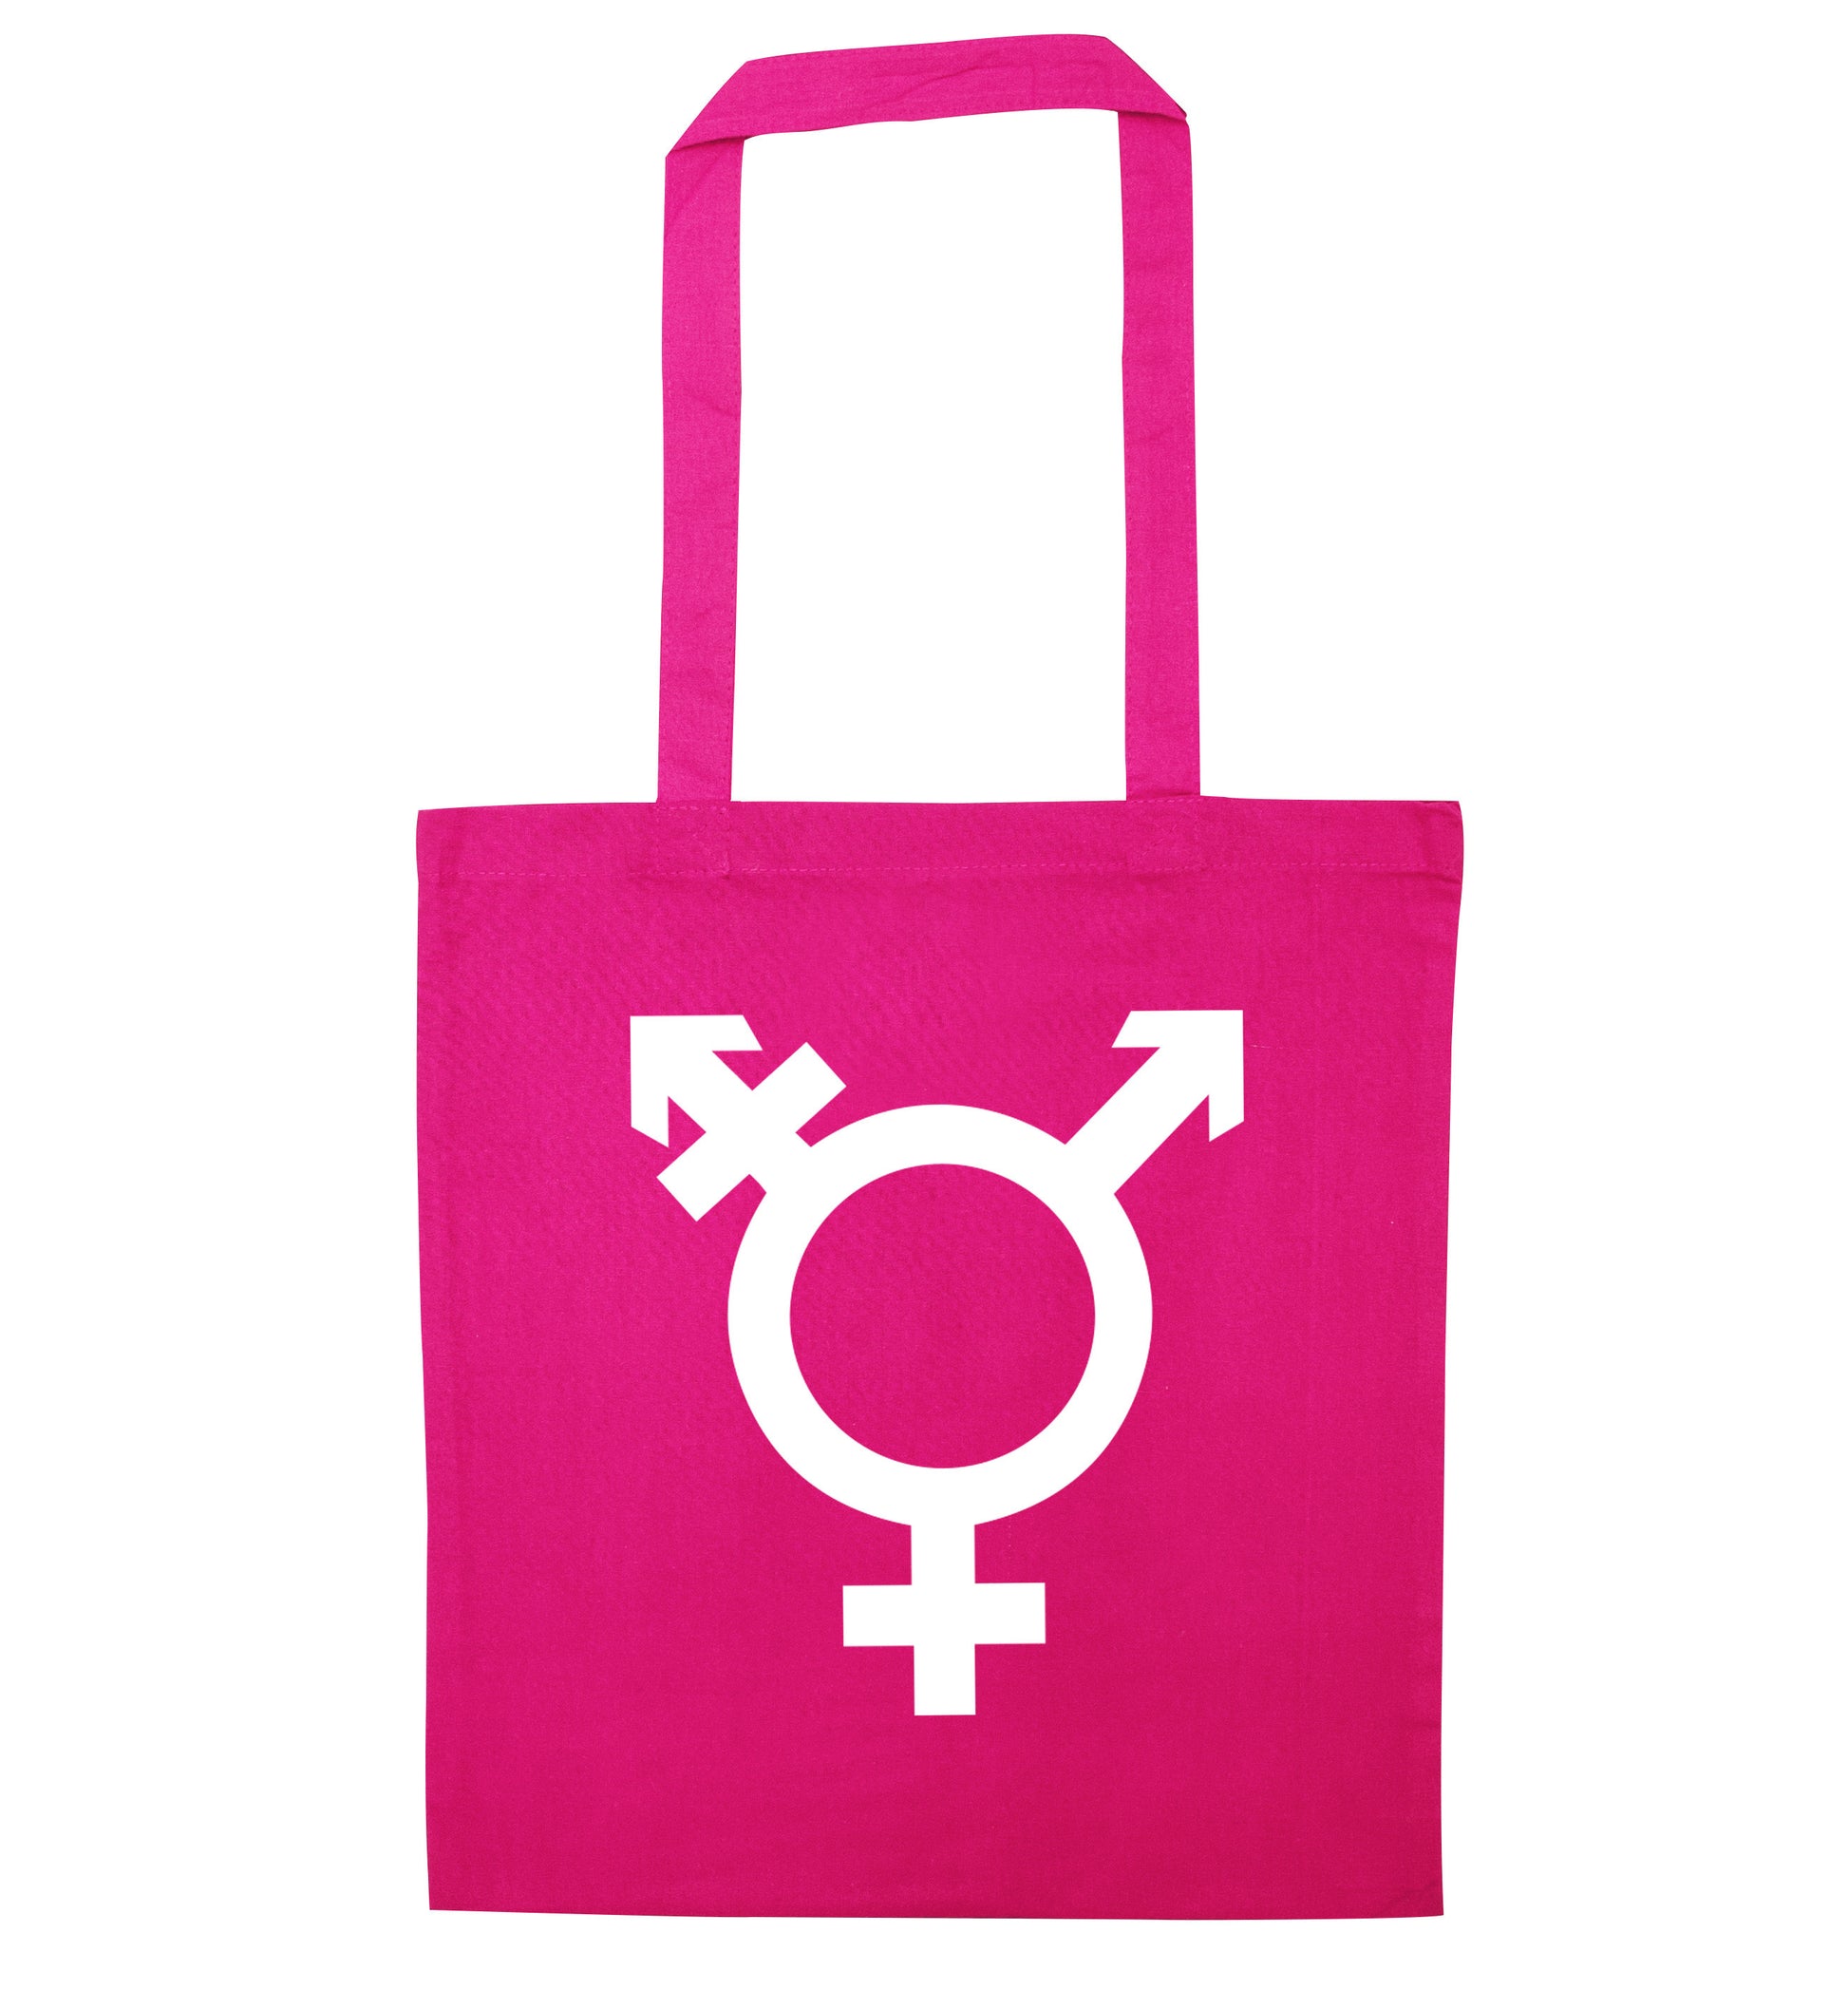 Gender neutral symbol large pink tote bag